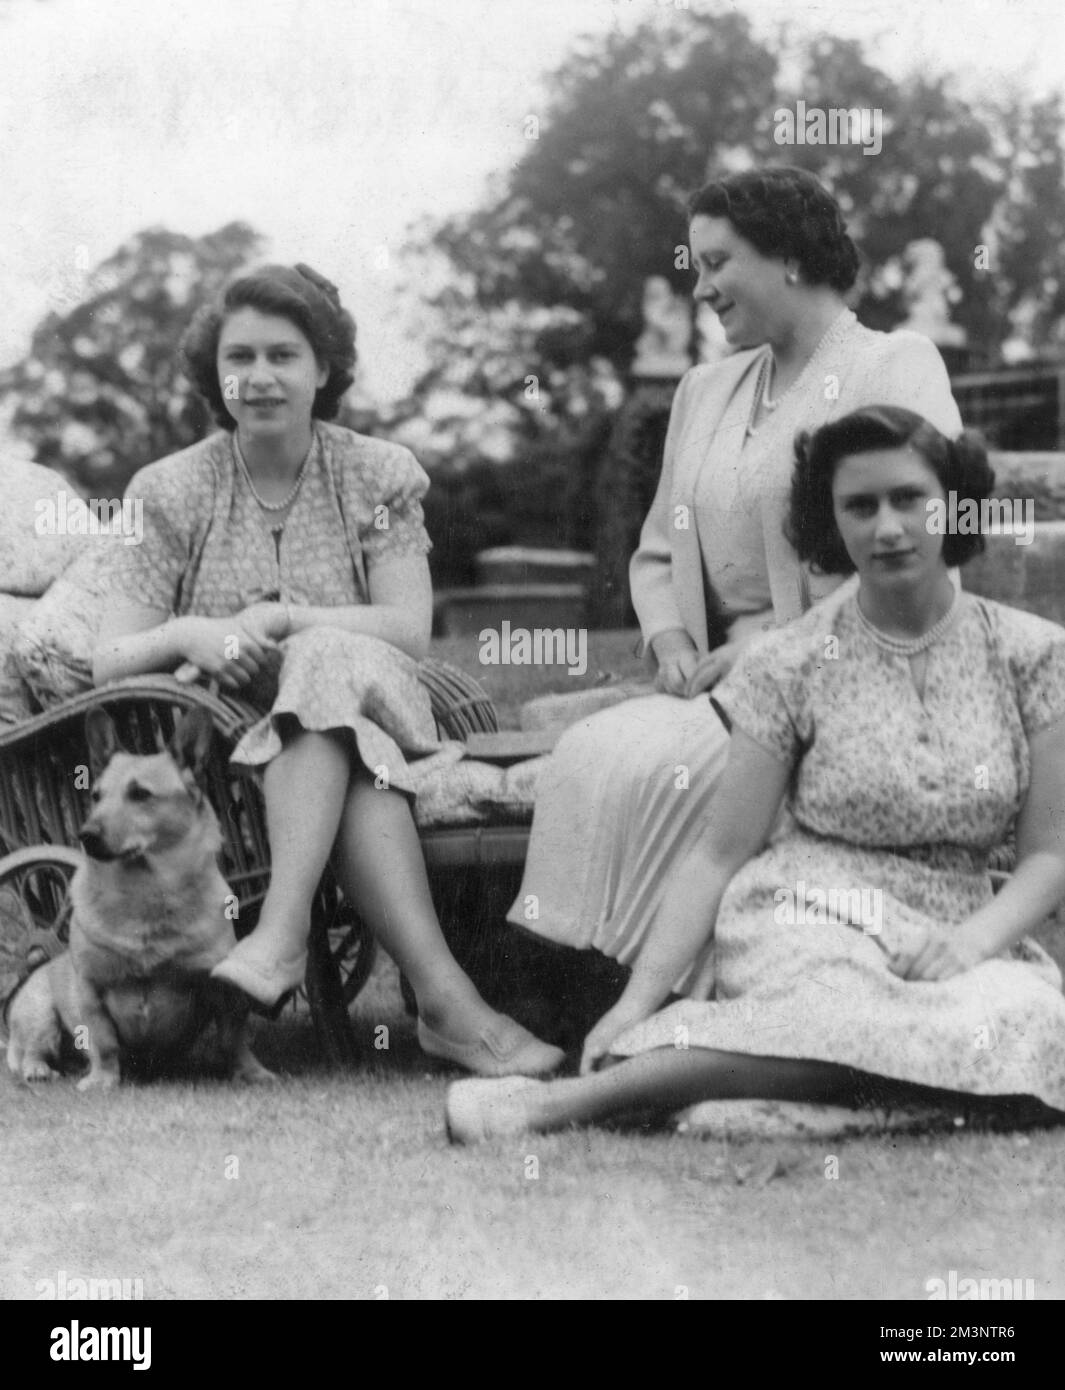 La principessa Elisabetta (poi regina Elisabetta II) e la principessa Margherita siedero insieme alla loro madre, la regina Elisabetta e un corgi. Data: c.1945 Foto Stock